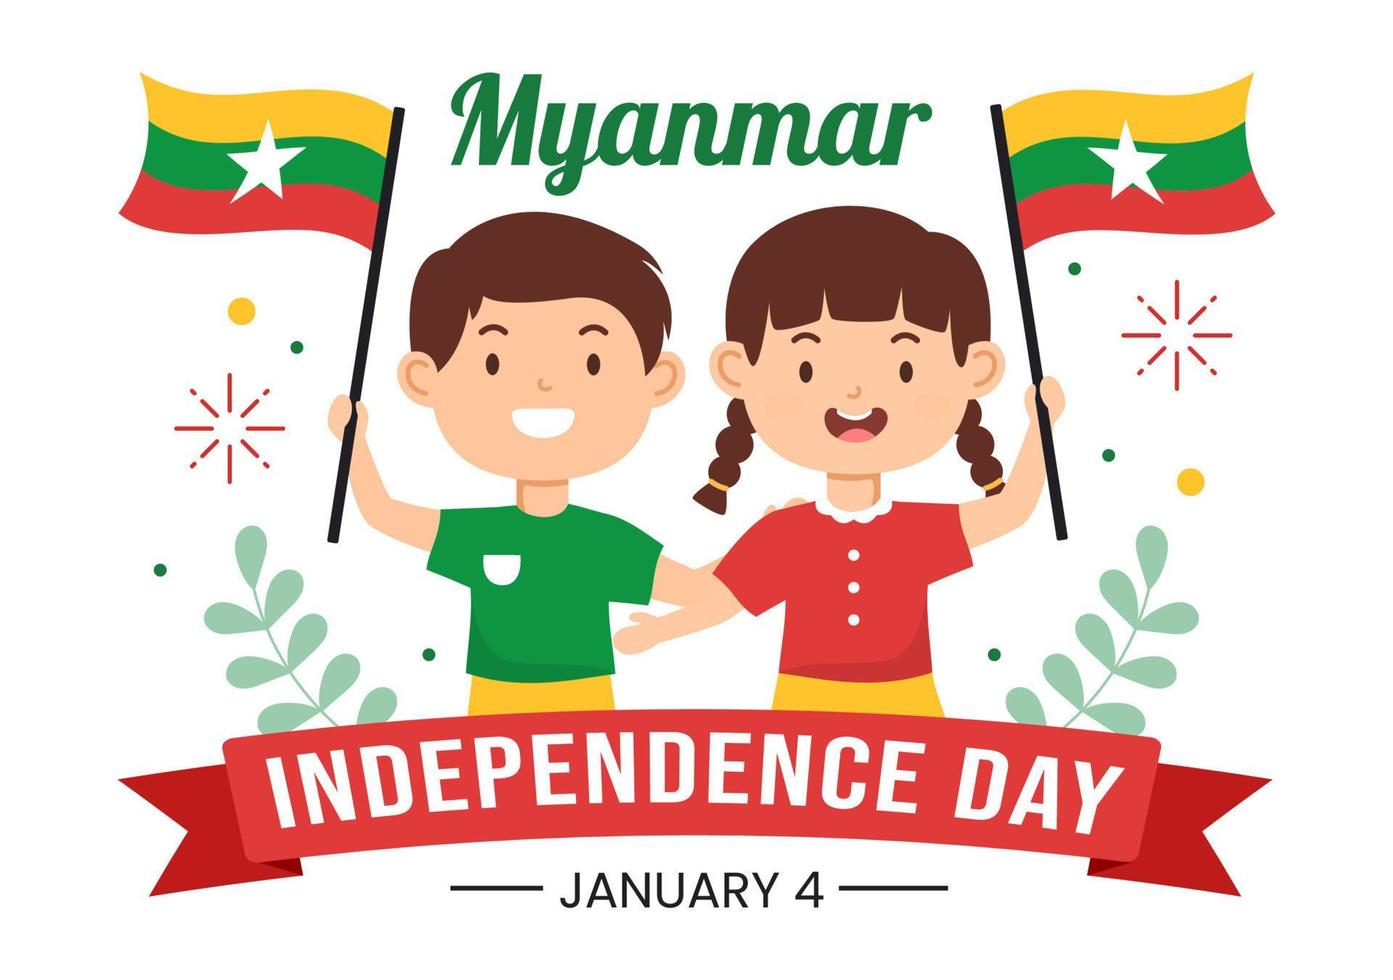 célébrant le jour de l'indépendance du myanmar le 4 janvier avec de petits enfants portant des drapeaux en illustration de modèles dessinés à la main vecteur